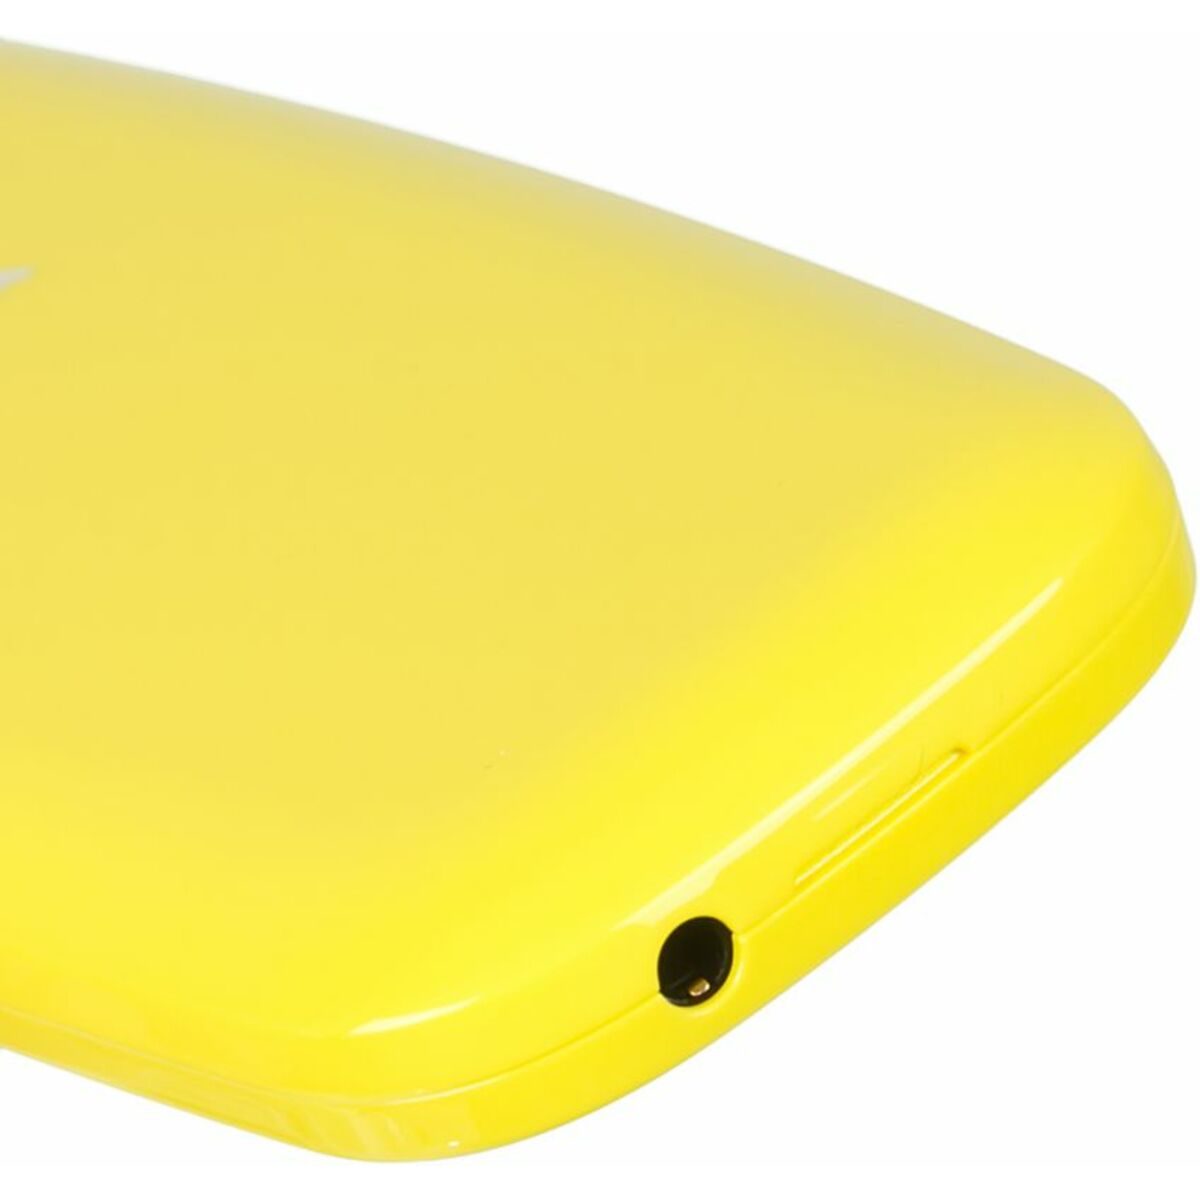 Мобильный телефон Nokia 3310 (2017) Dual Sim (Цвет: Yellow)